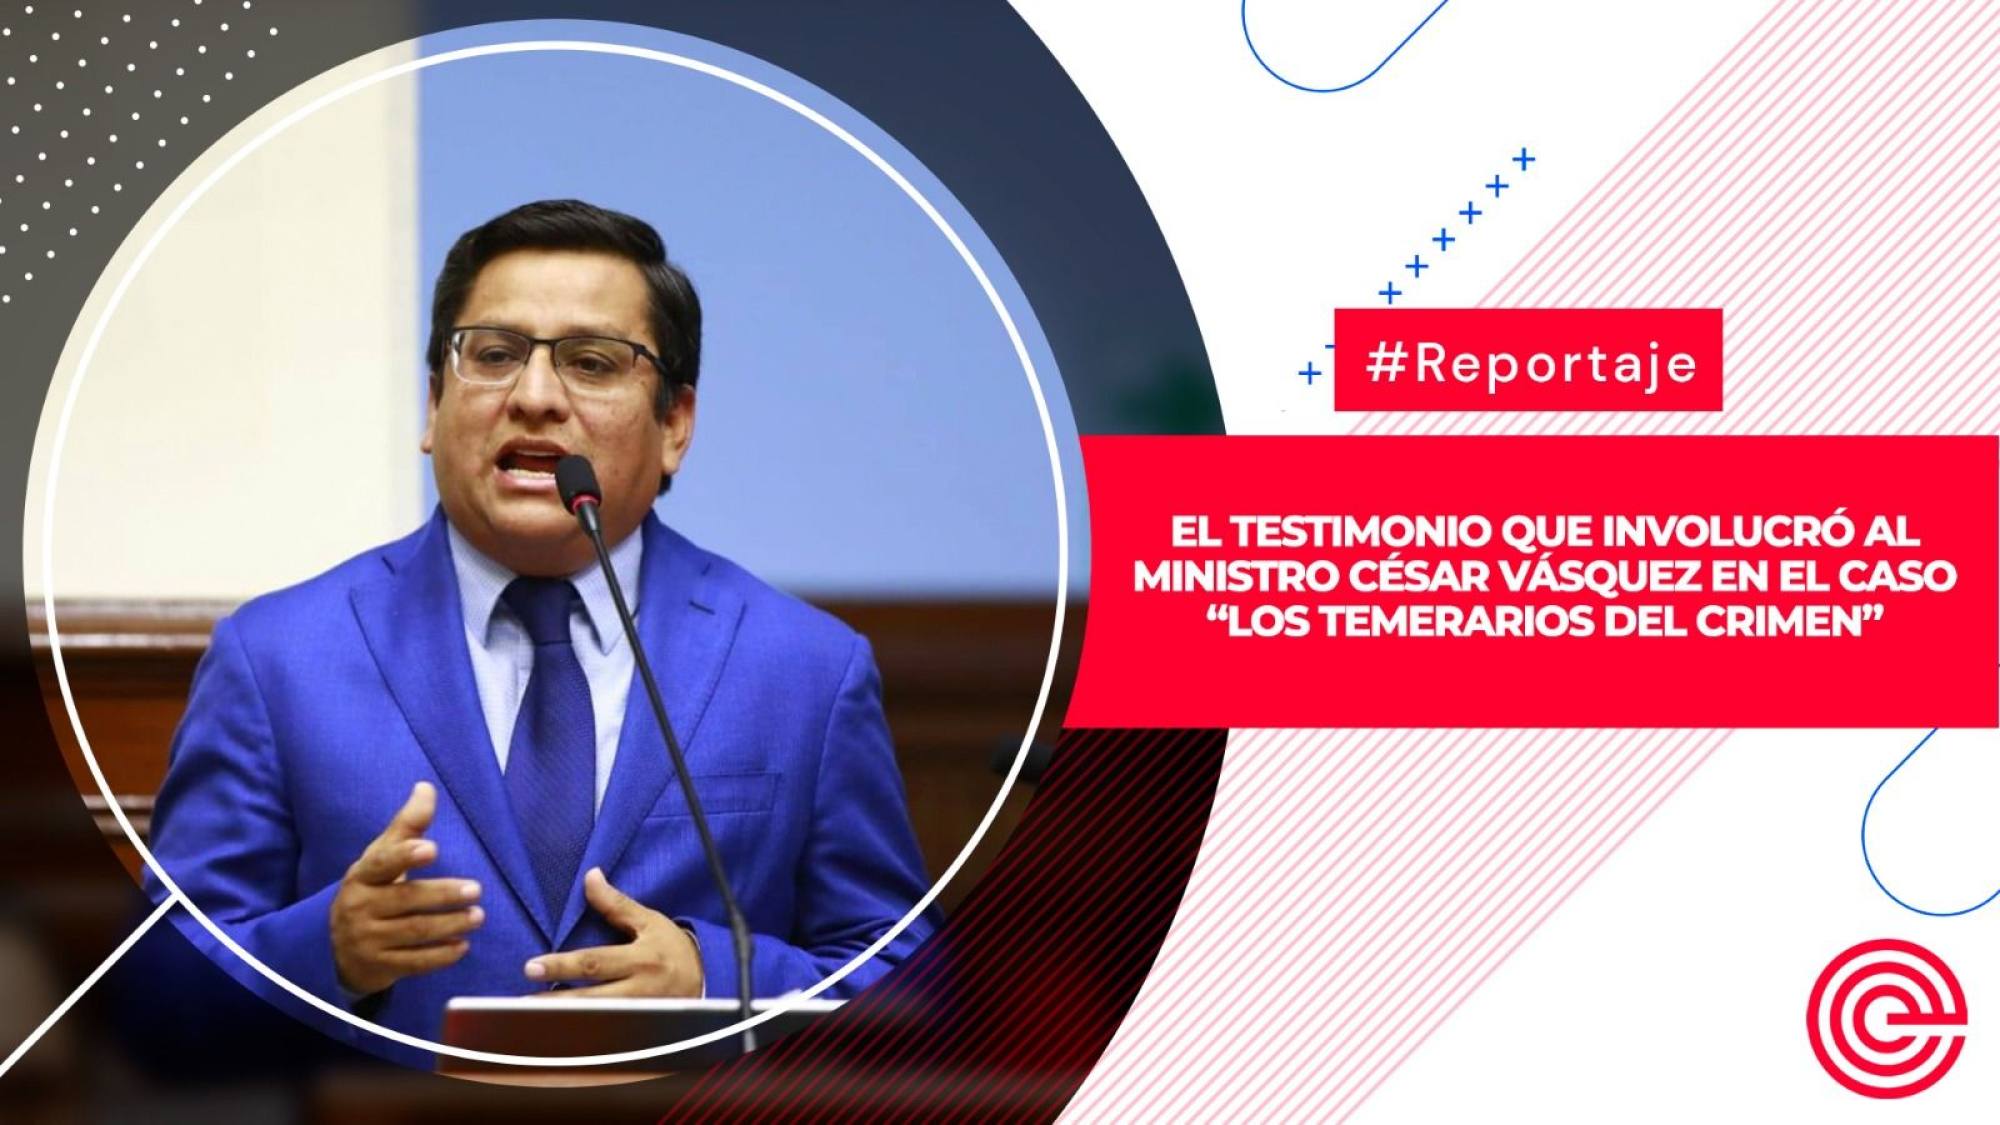 El testimonio que involucró al ministro César Vásquez en el caso “Los temerarios del crimen”, Epicentro TV